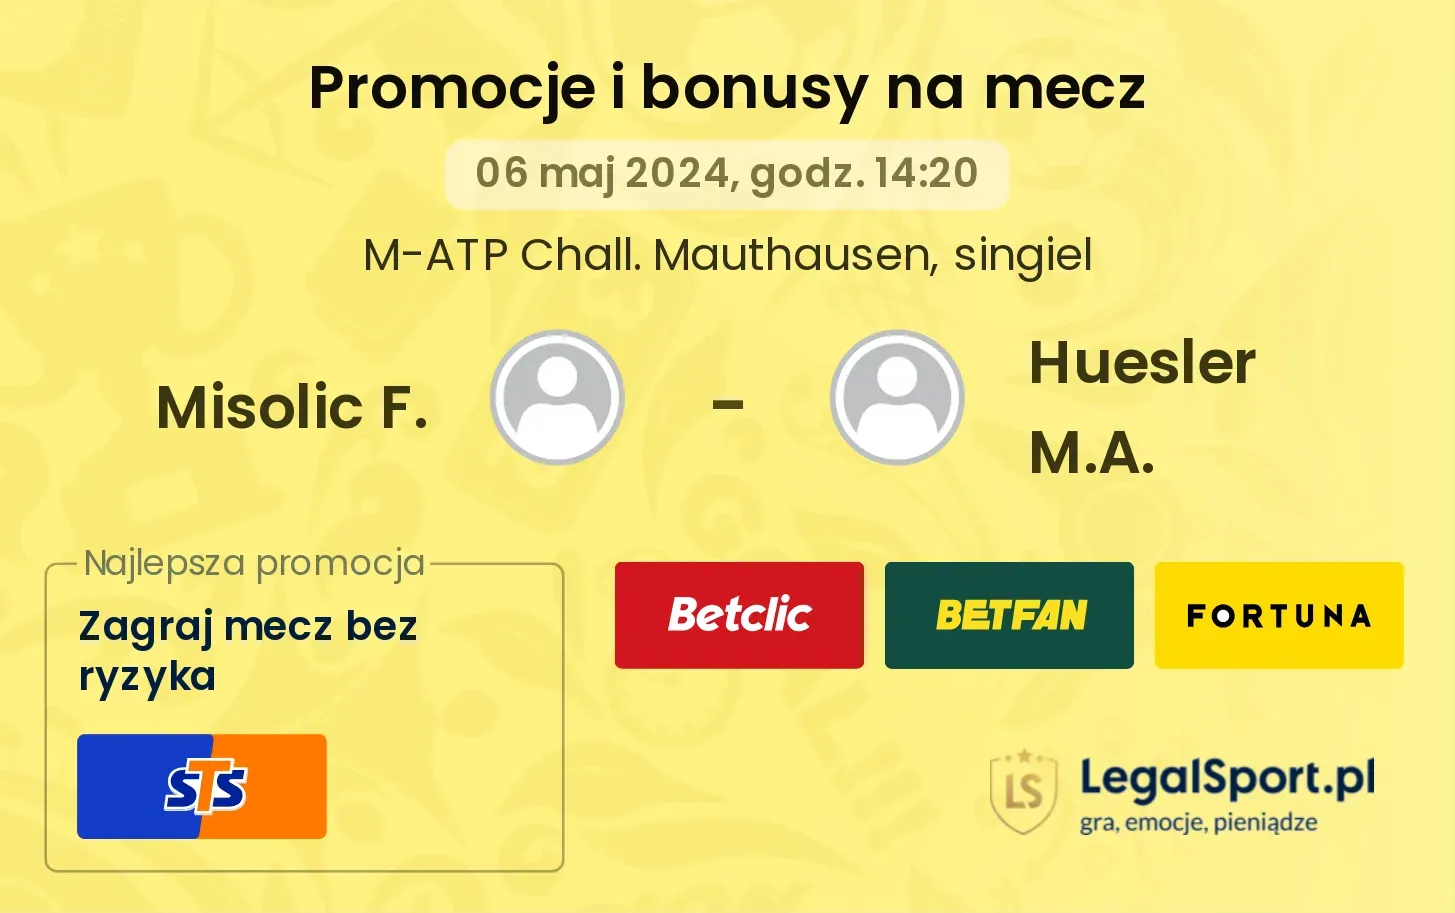 Misolic F. - Huesler M.A. promocje bonusy na mecz